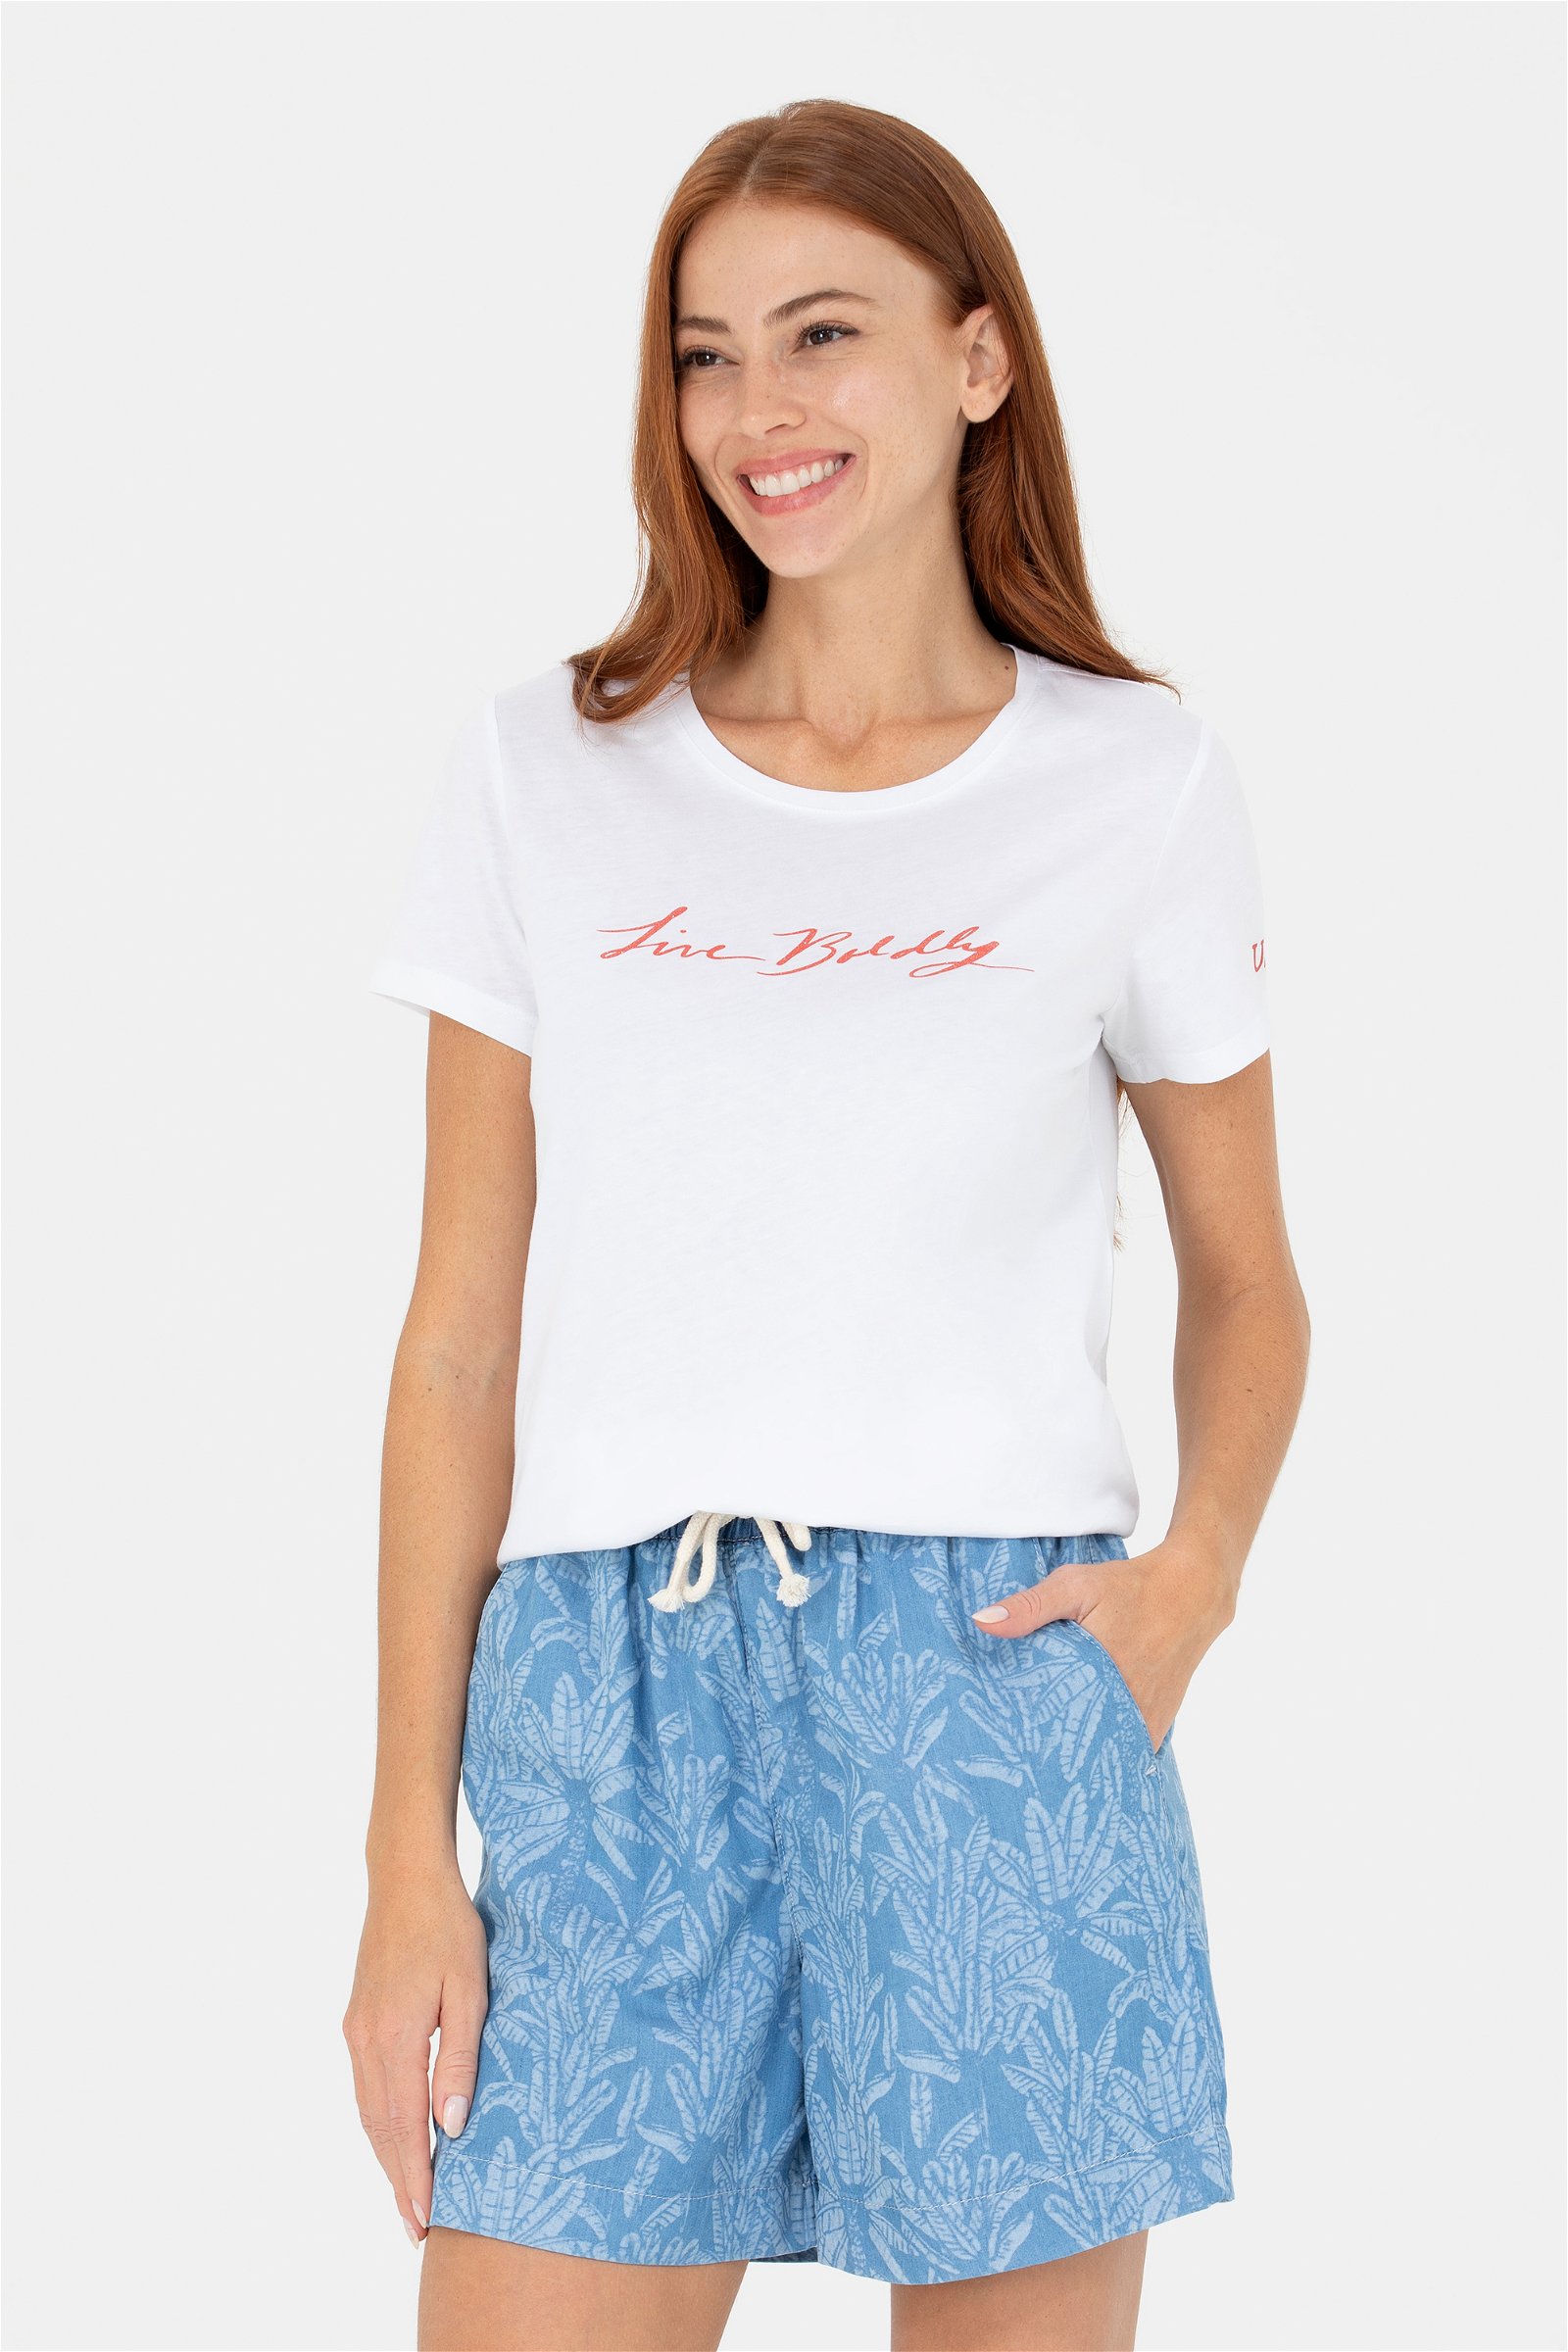 تی شرت  سفید  استاندارد فیت  زنانه یو اس پولو | US POLO ASSN